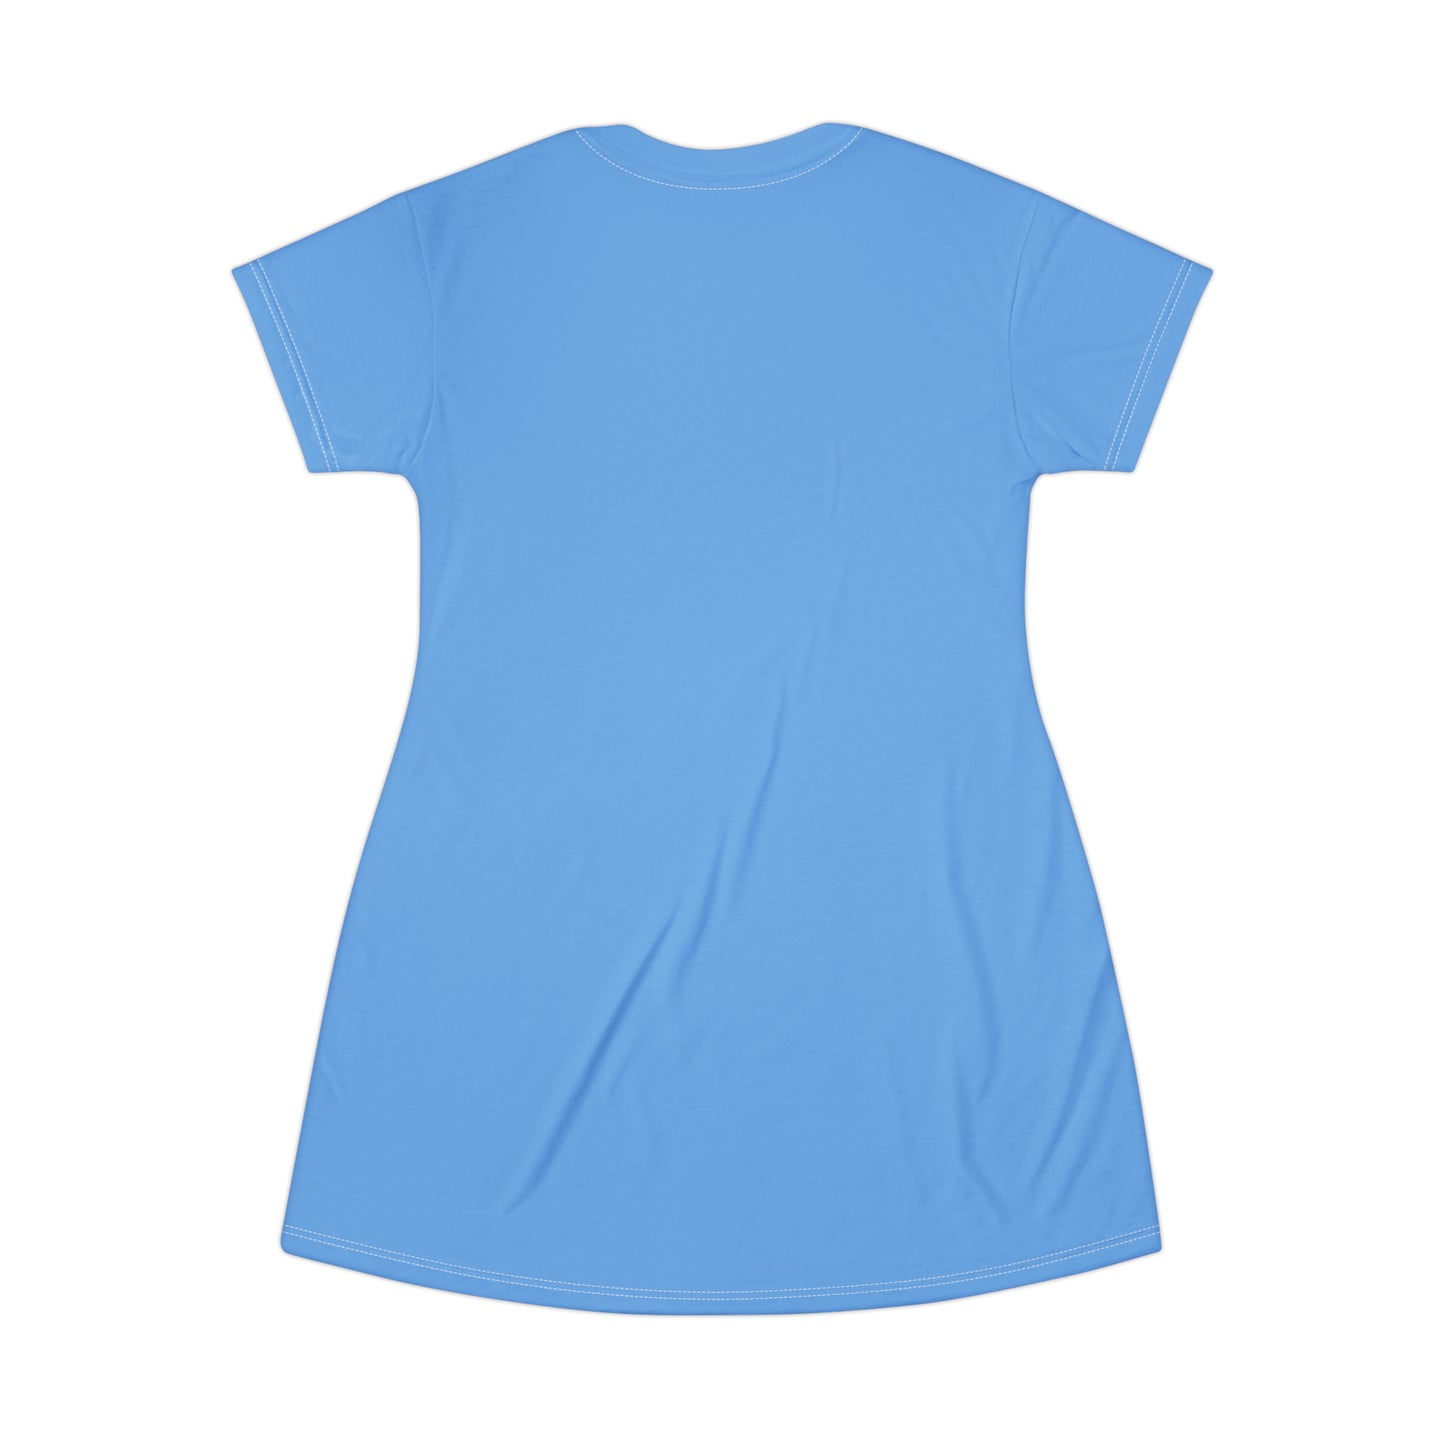 Good Witch T-Shirt Dress (AOP) light blue